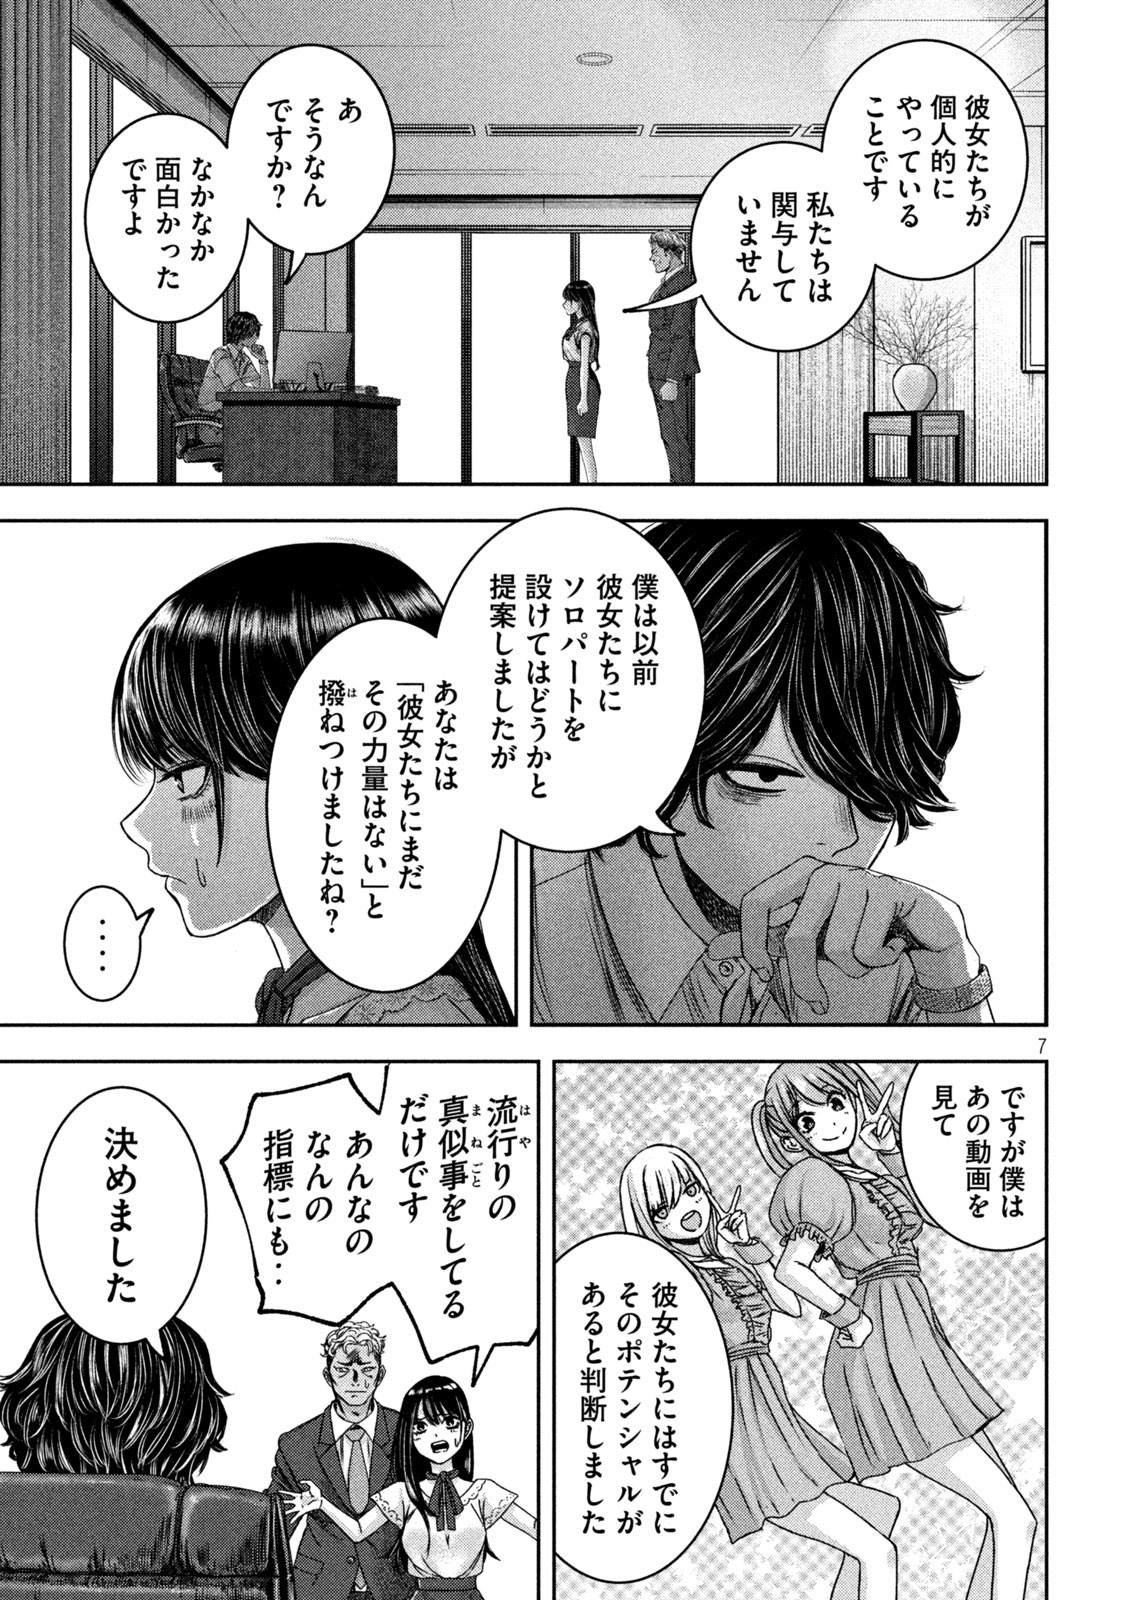 Watashi no Arika - Chapter 37 - Page 7